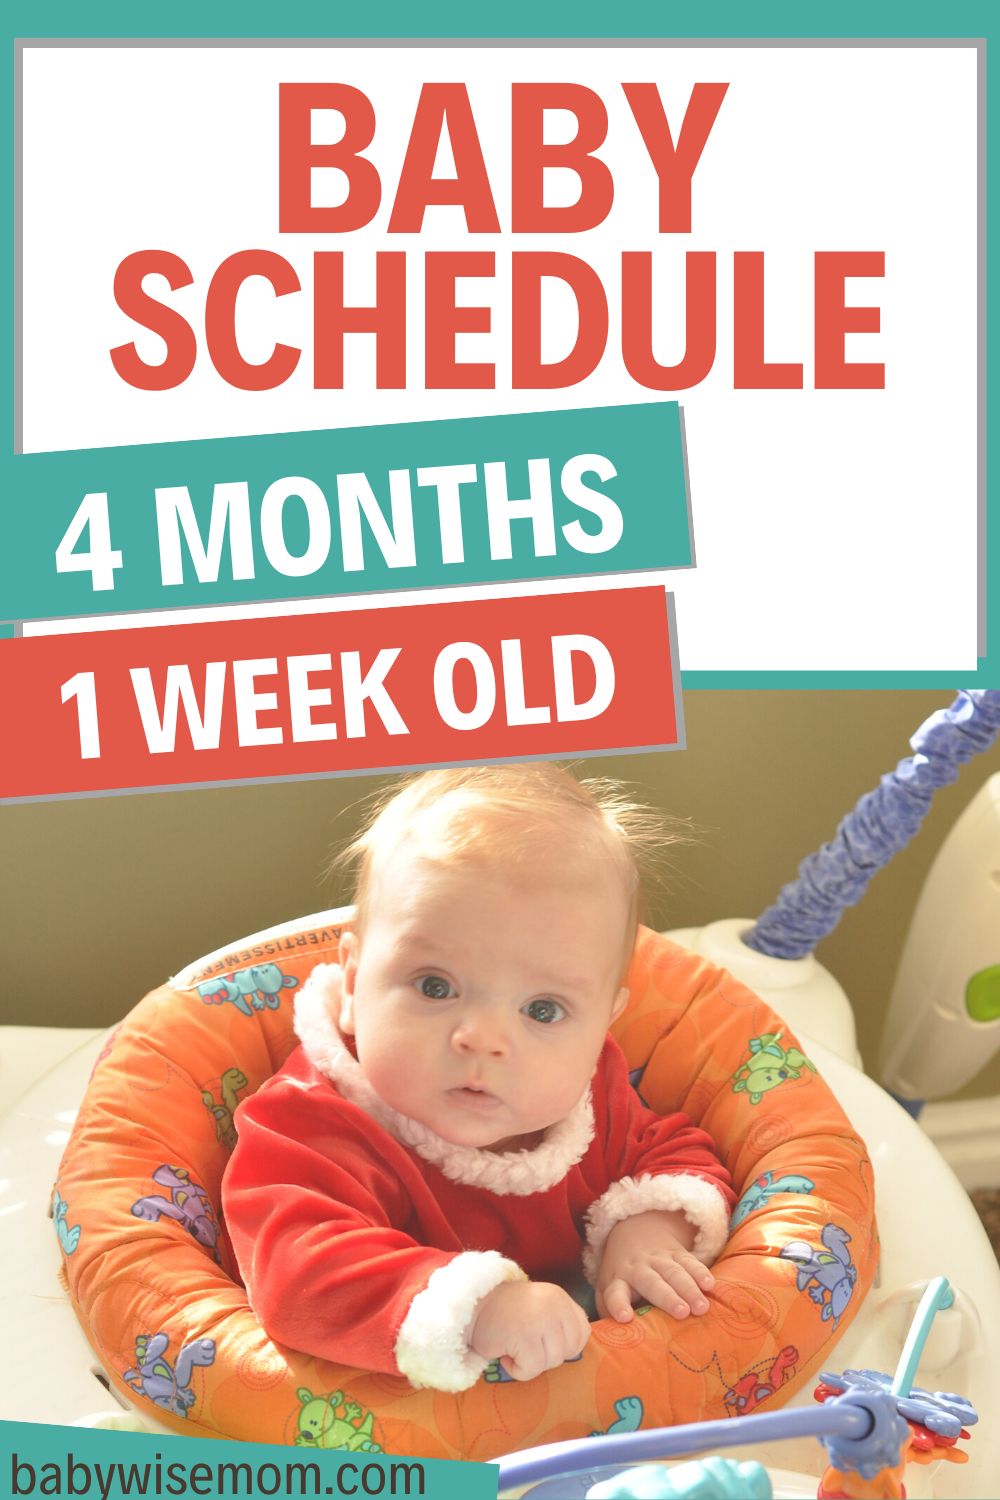 4 months 1 week old baby schedule pinnable image